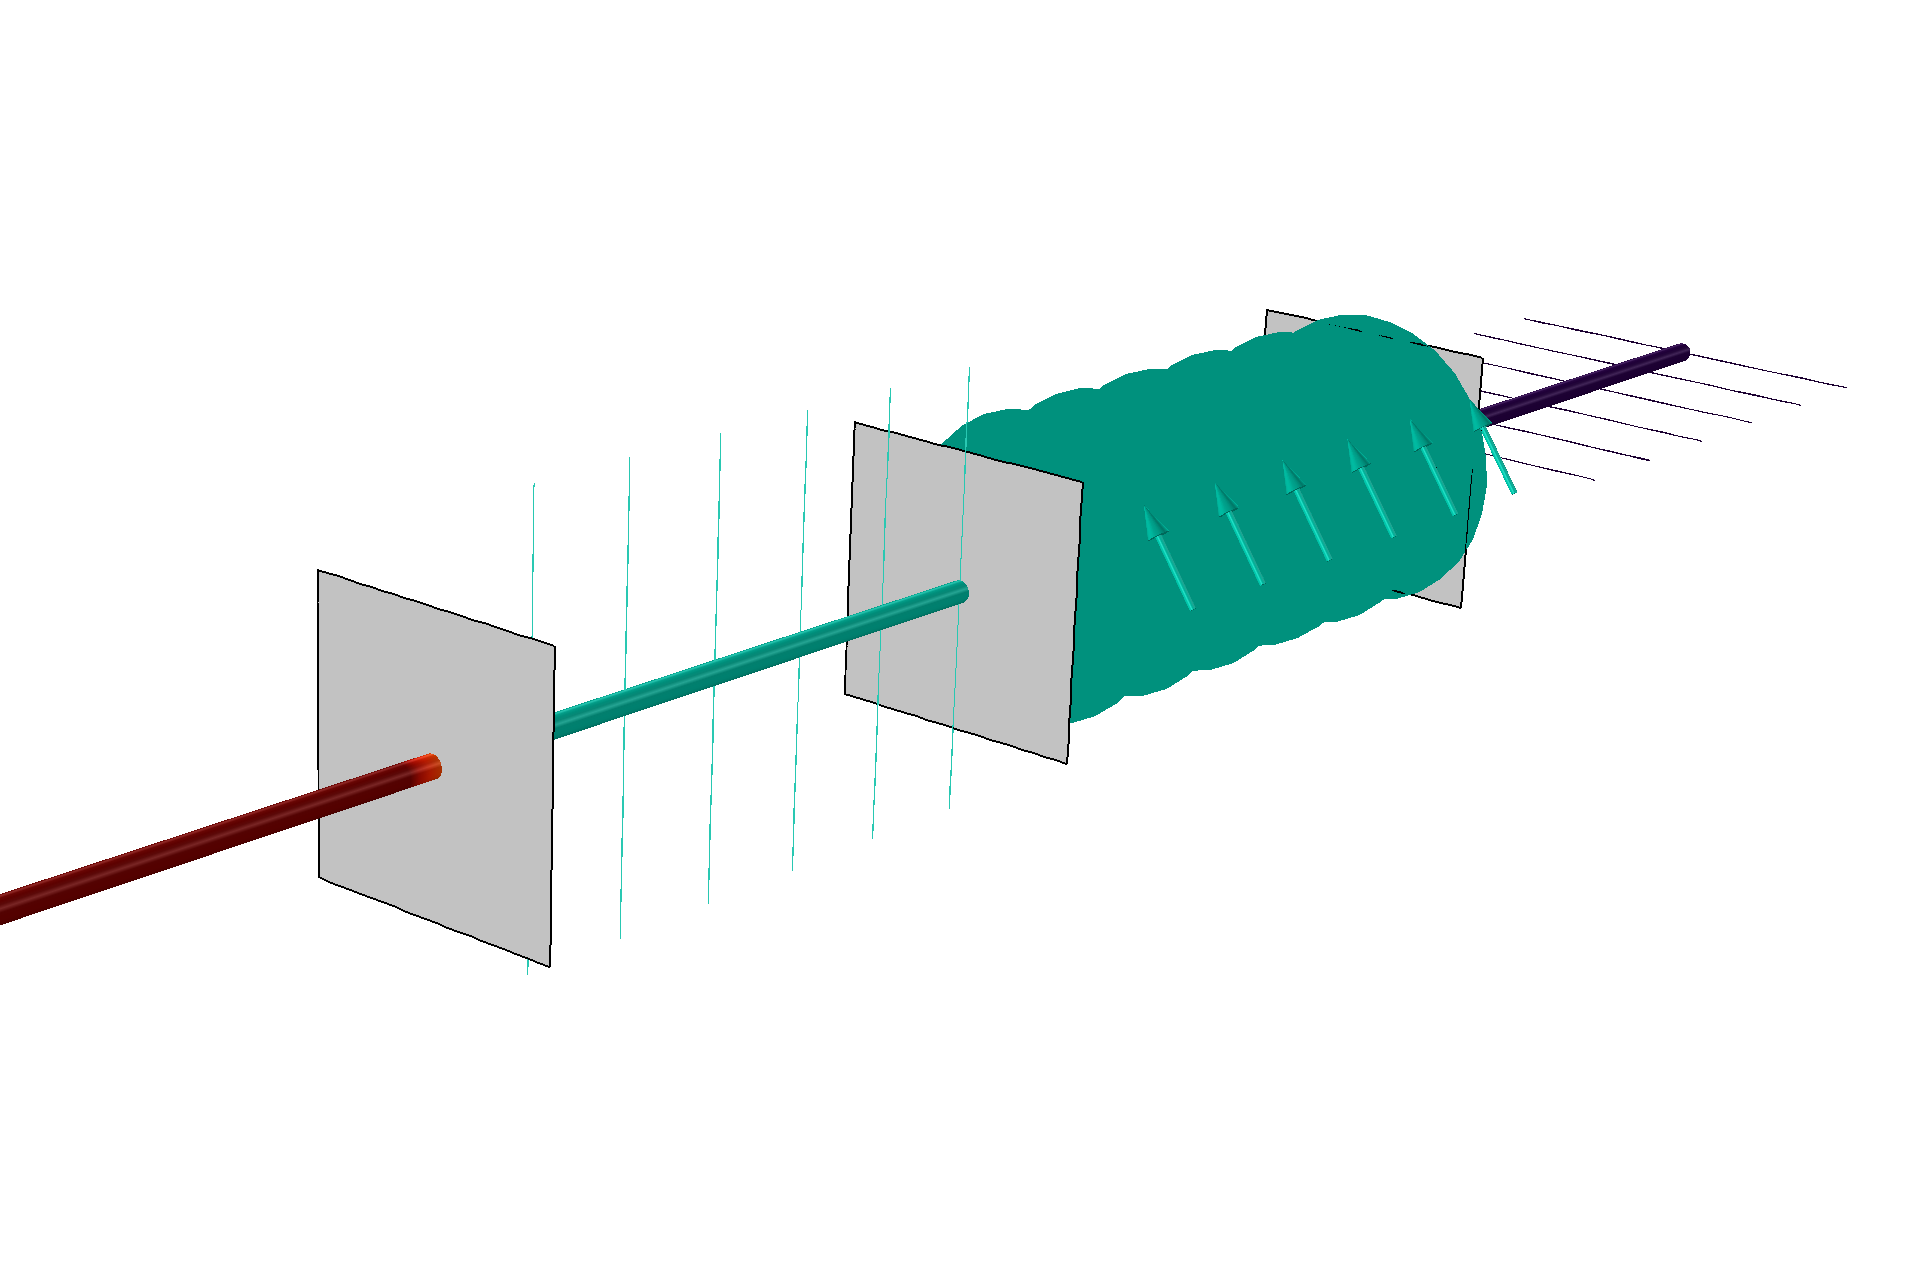 Retardador de onda lineal: Un rayo no polarizado pasa a través de dos polarizadores lineales y un retardo de cuarto de onda. Las transformaciones de las luces polarizadas lineal y circularmente pueden verse graficando elipses de polarización a lo largo del rayo.